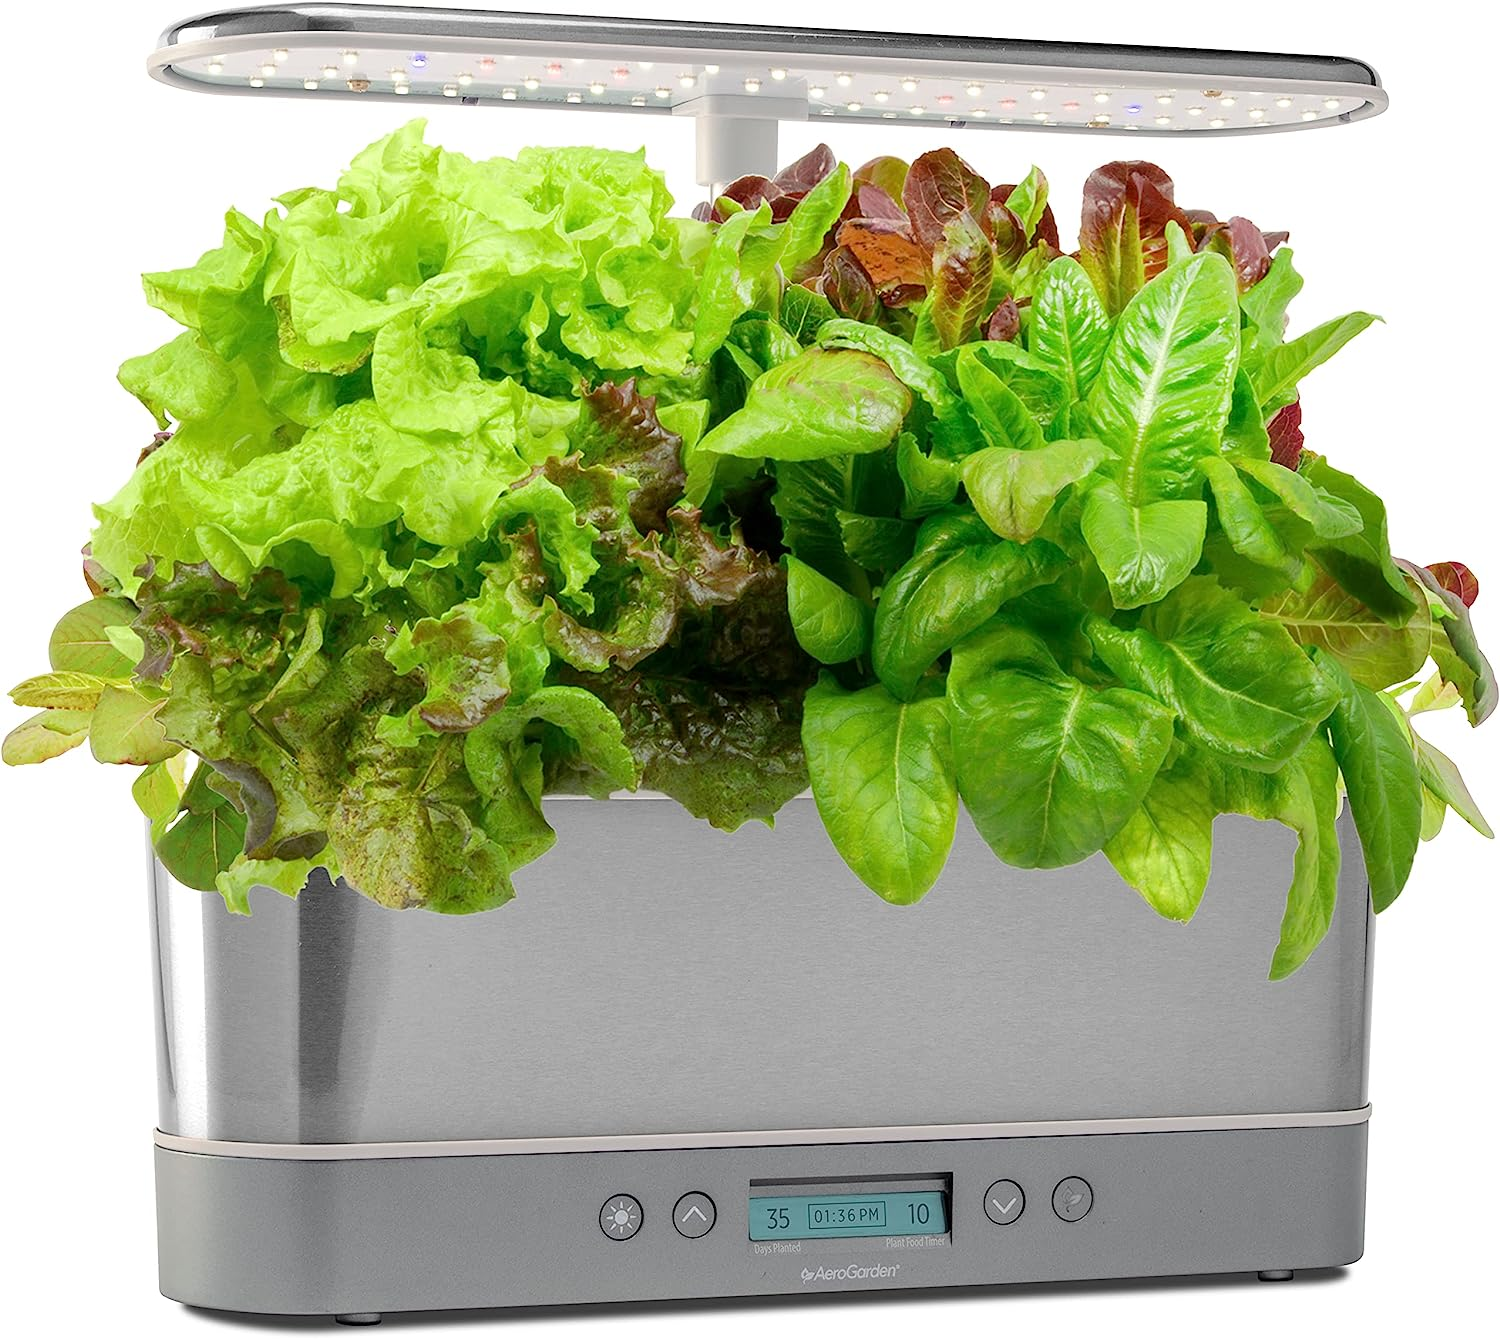 Aerogarden Harvest Elite Slim with Heirloom Salad Kit $64.99 at Woot via Amazon